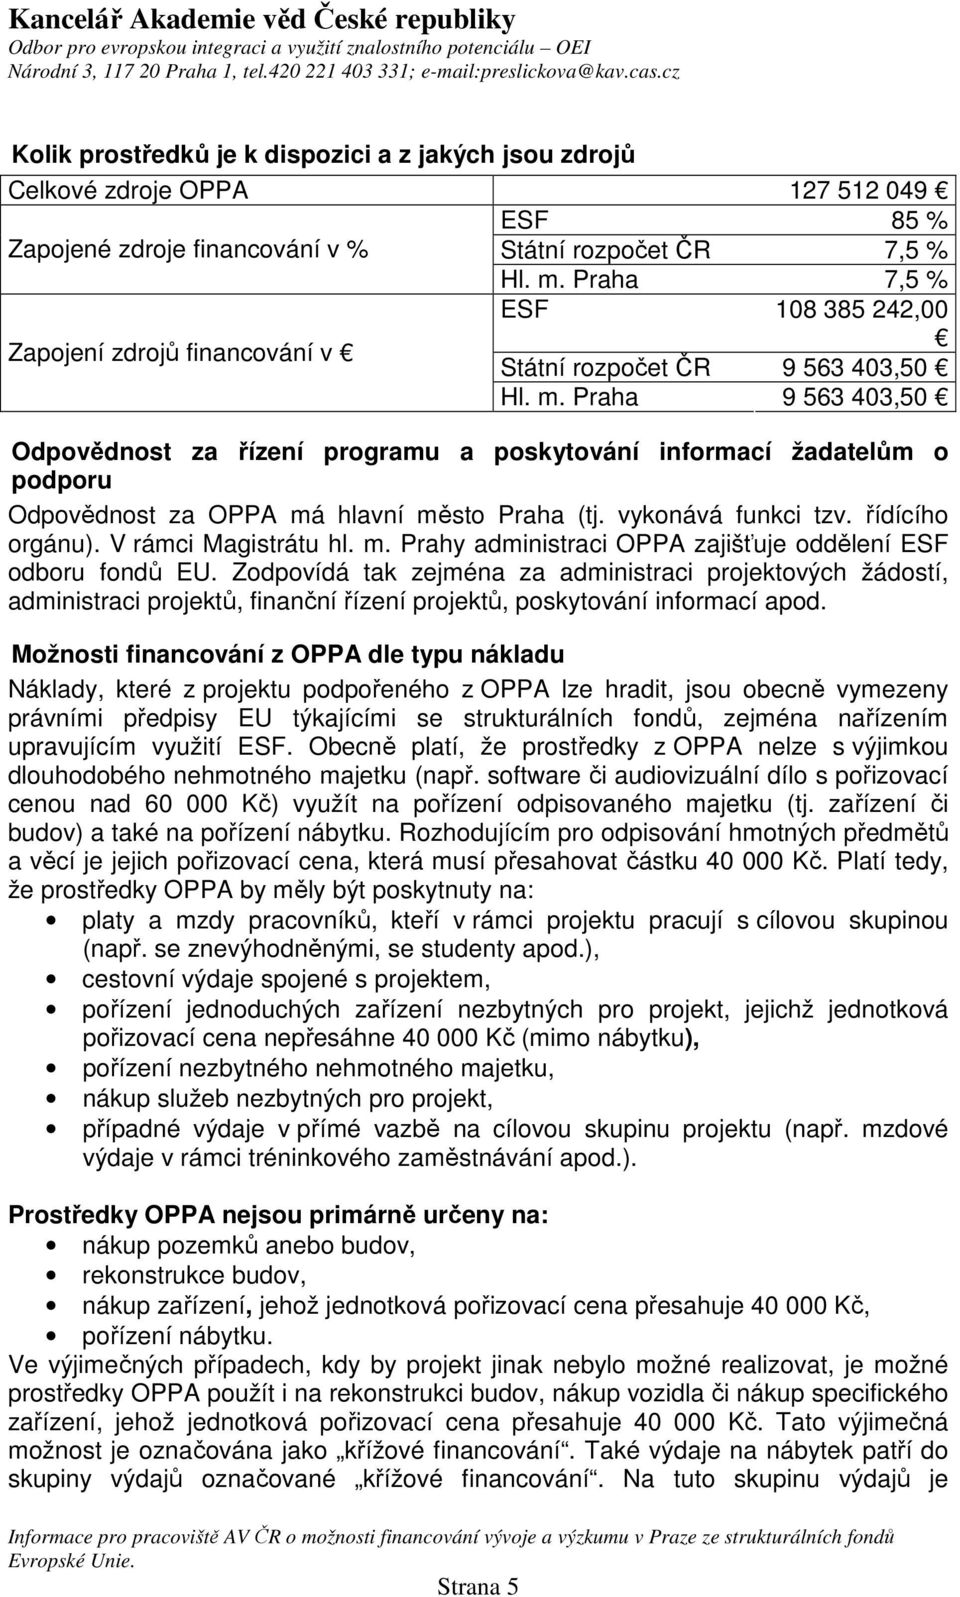 Praha 9 563 403,50 Odpovědnost za řízení programu a poskytování informací žadatelům o podporu Odpovědnost za OPPA má hlavní město Praha (tj. vykonává funkci tzv. řídícího orgánu).